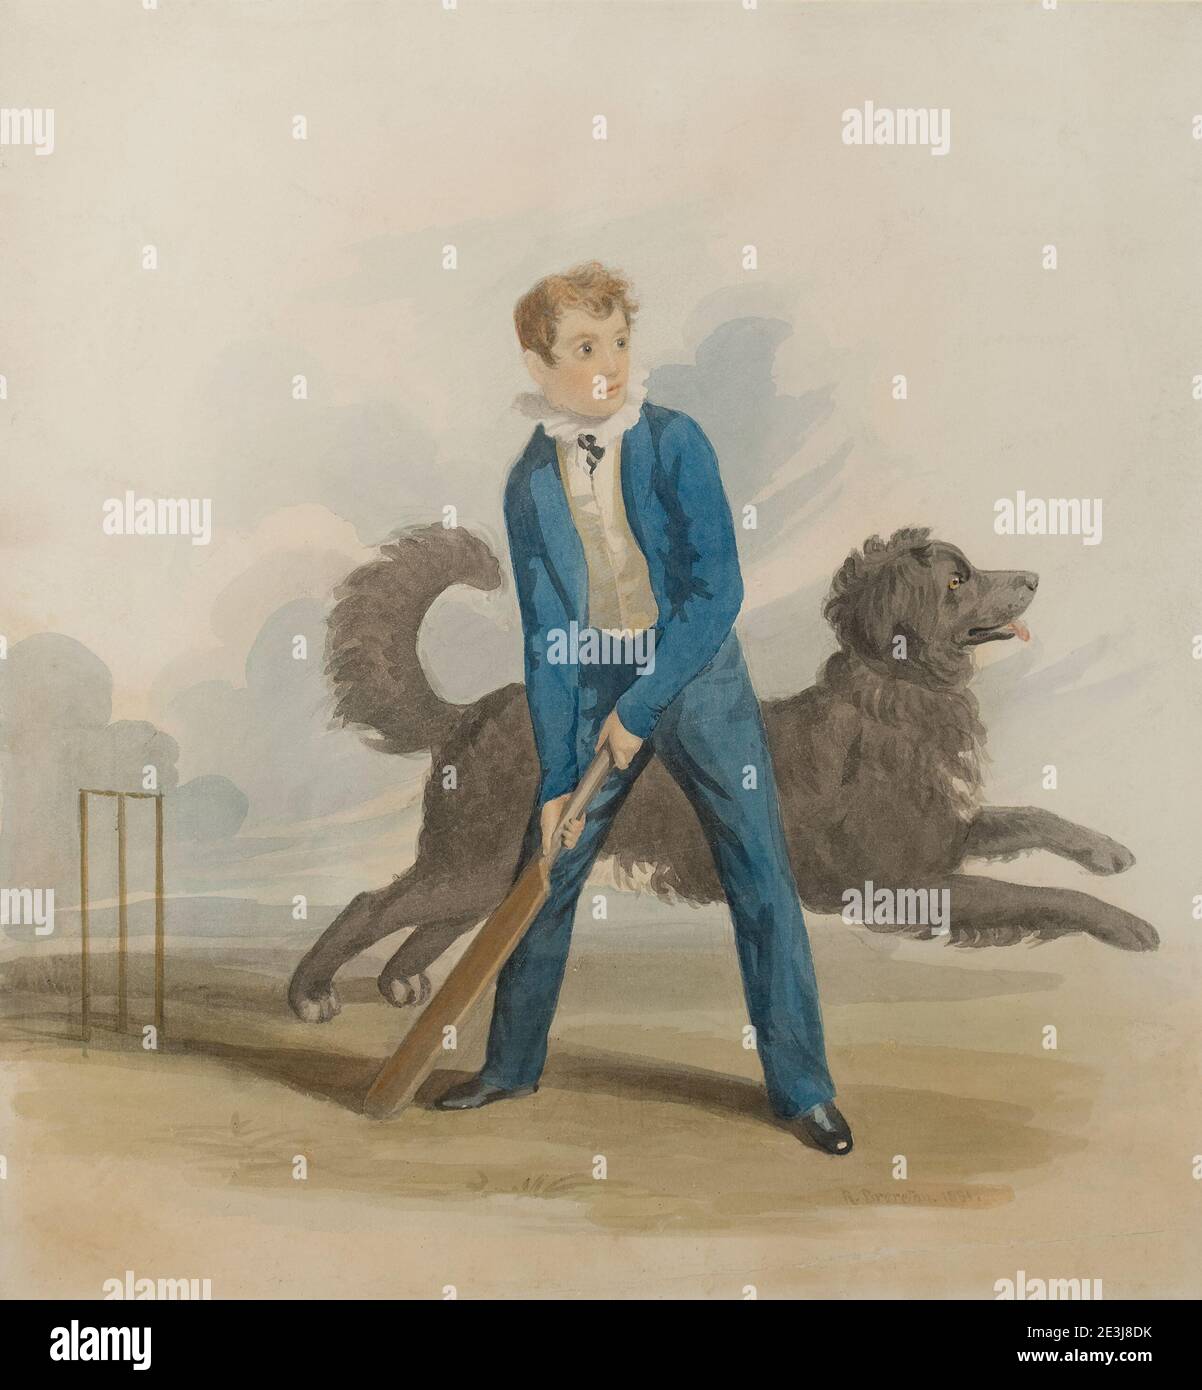 Peinture couleur de l'eau de garçon jouant au cricket avec chien à côté de lui. Peinture non signée Banque D'Images